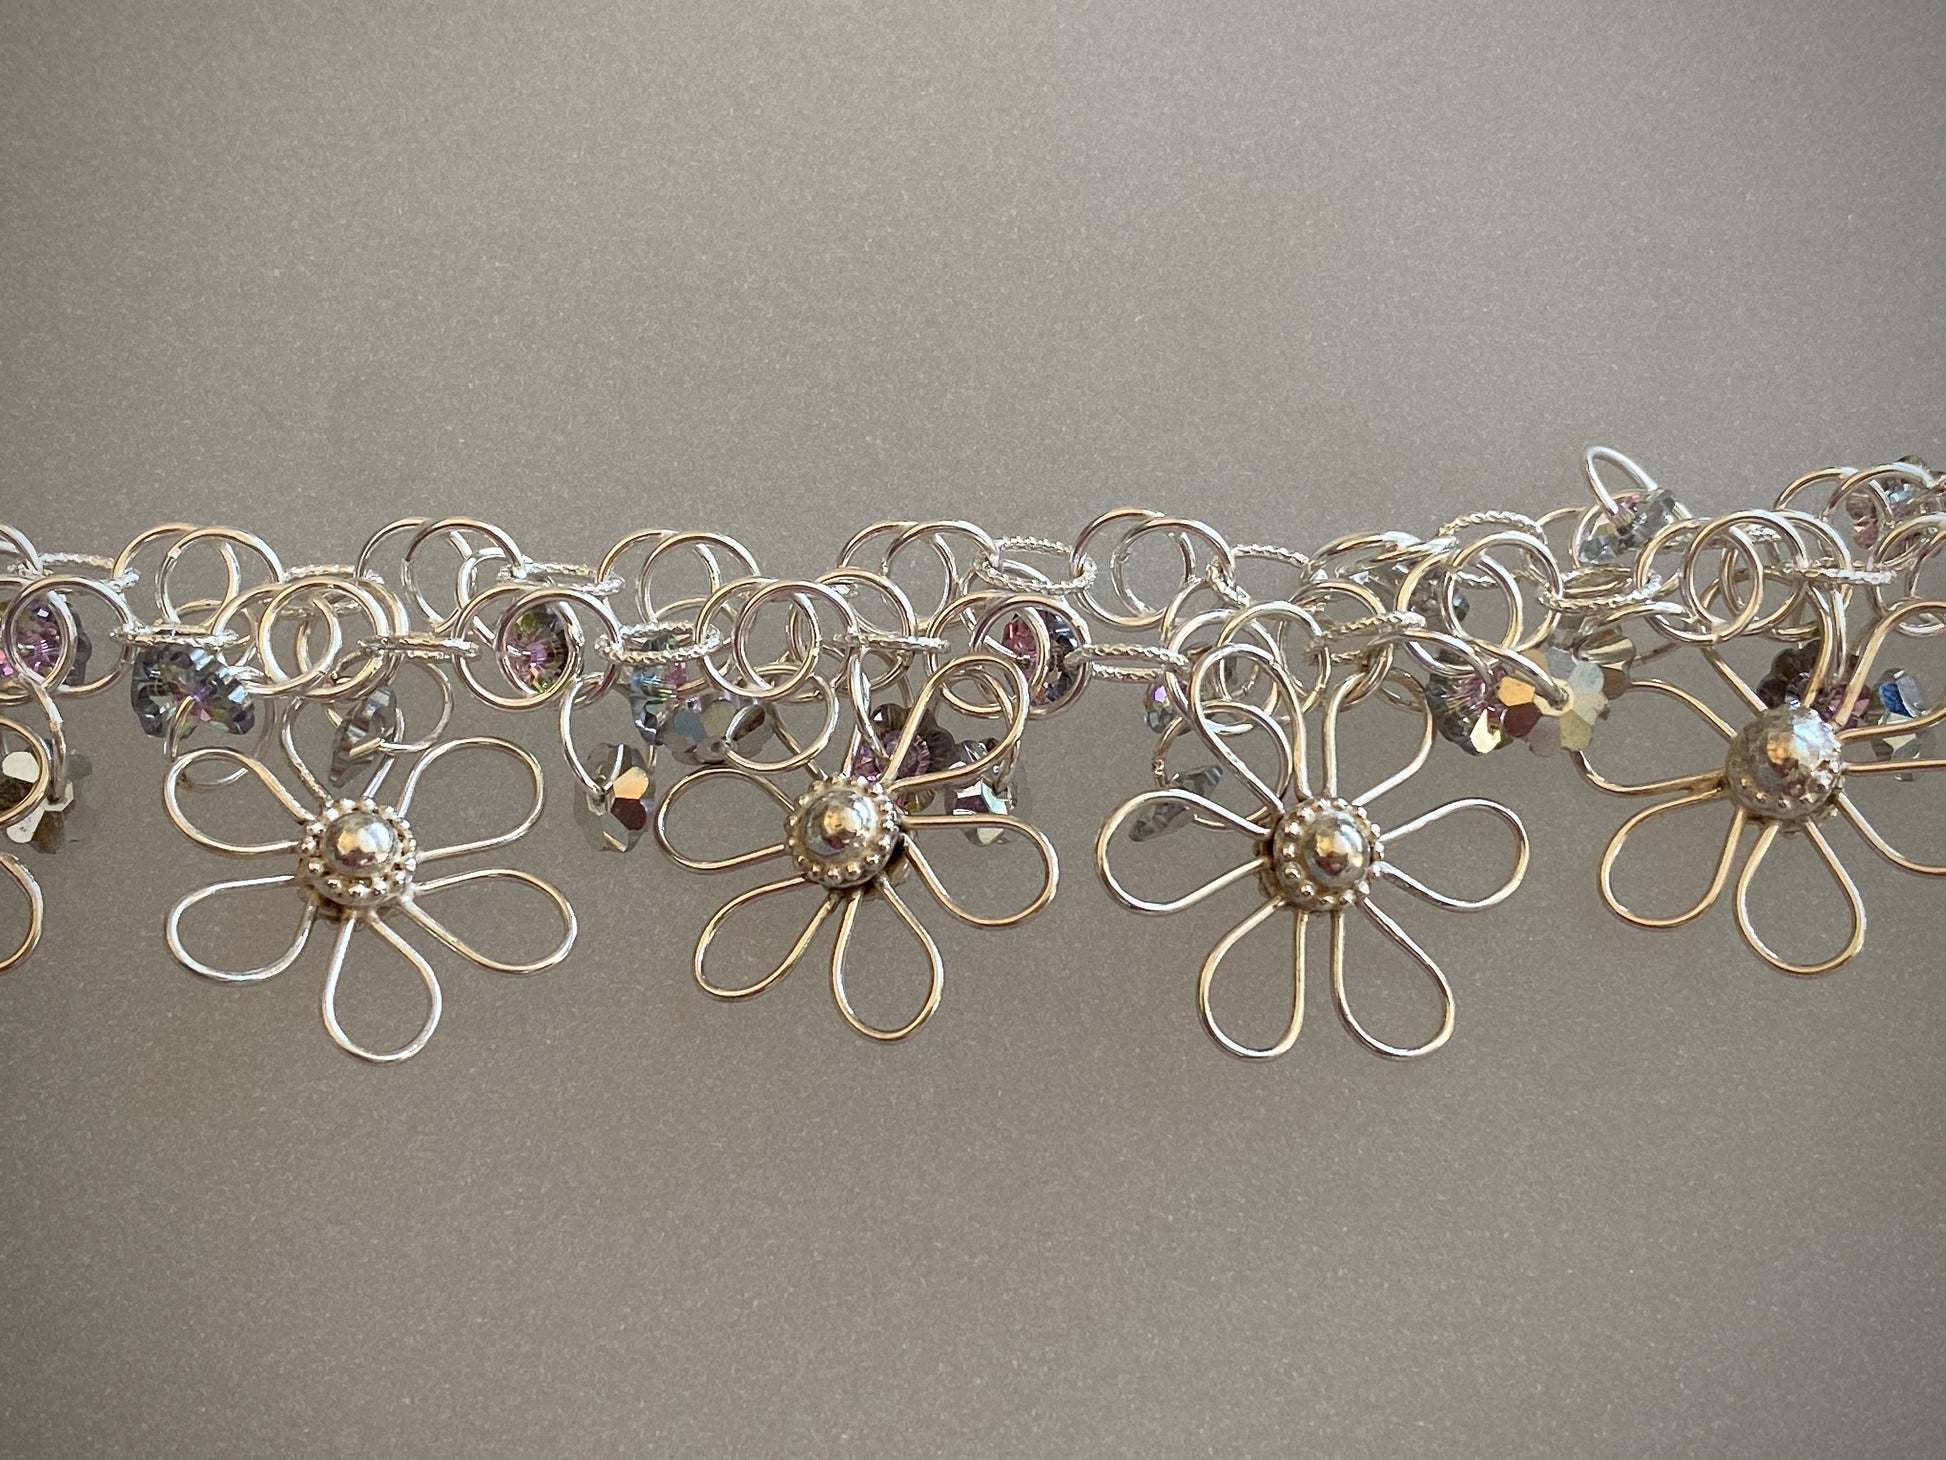 Closeup Handmade Link Chain & Flowers Arpaia Flora Chant Collection Bracelet